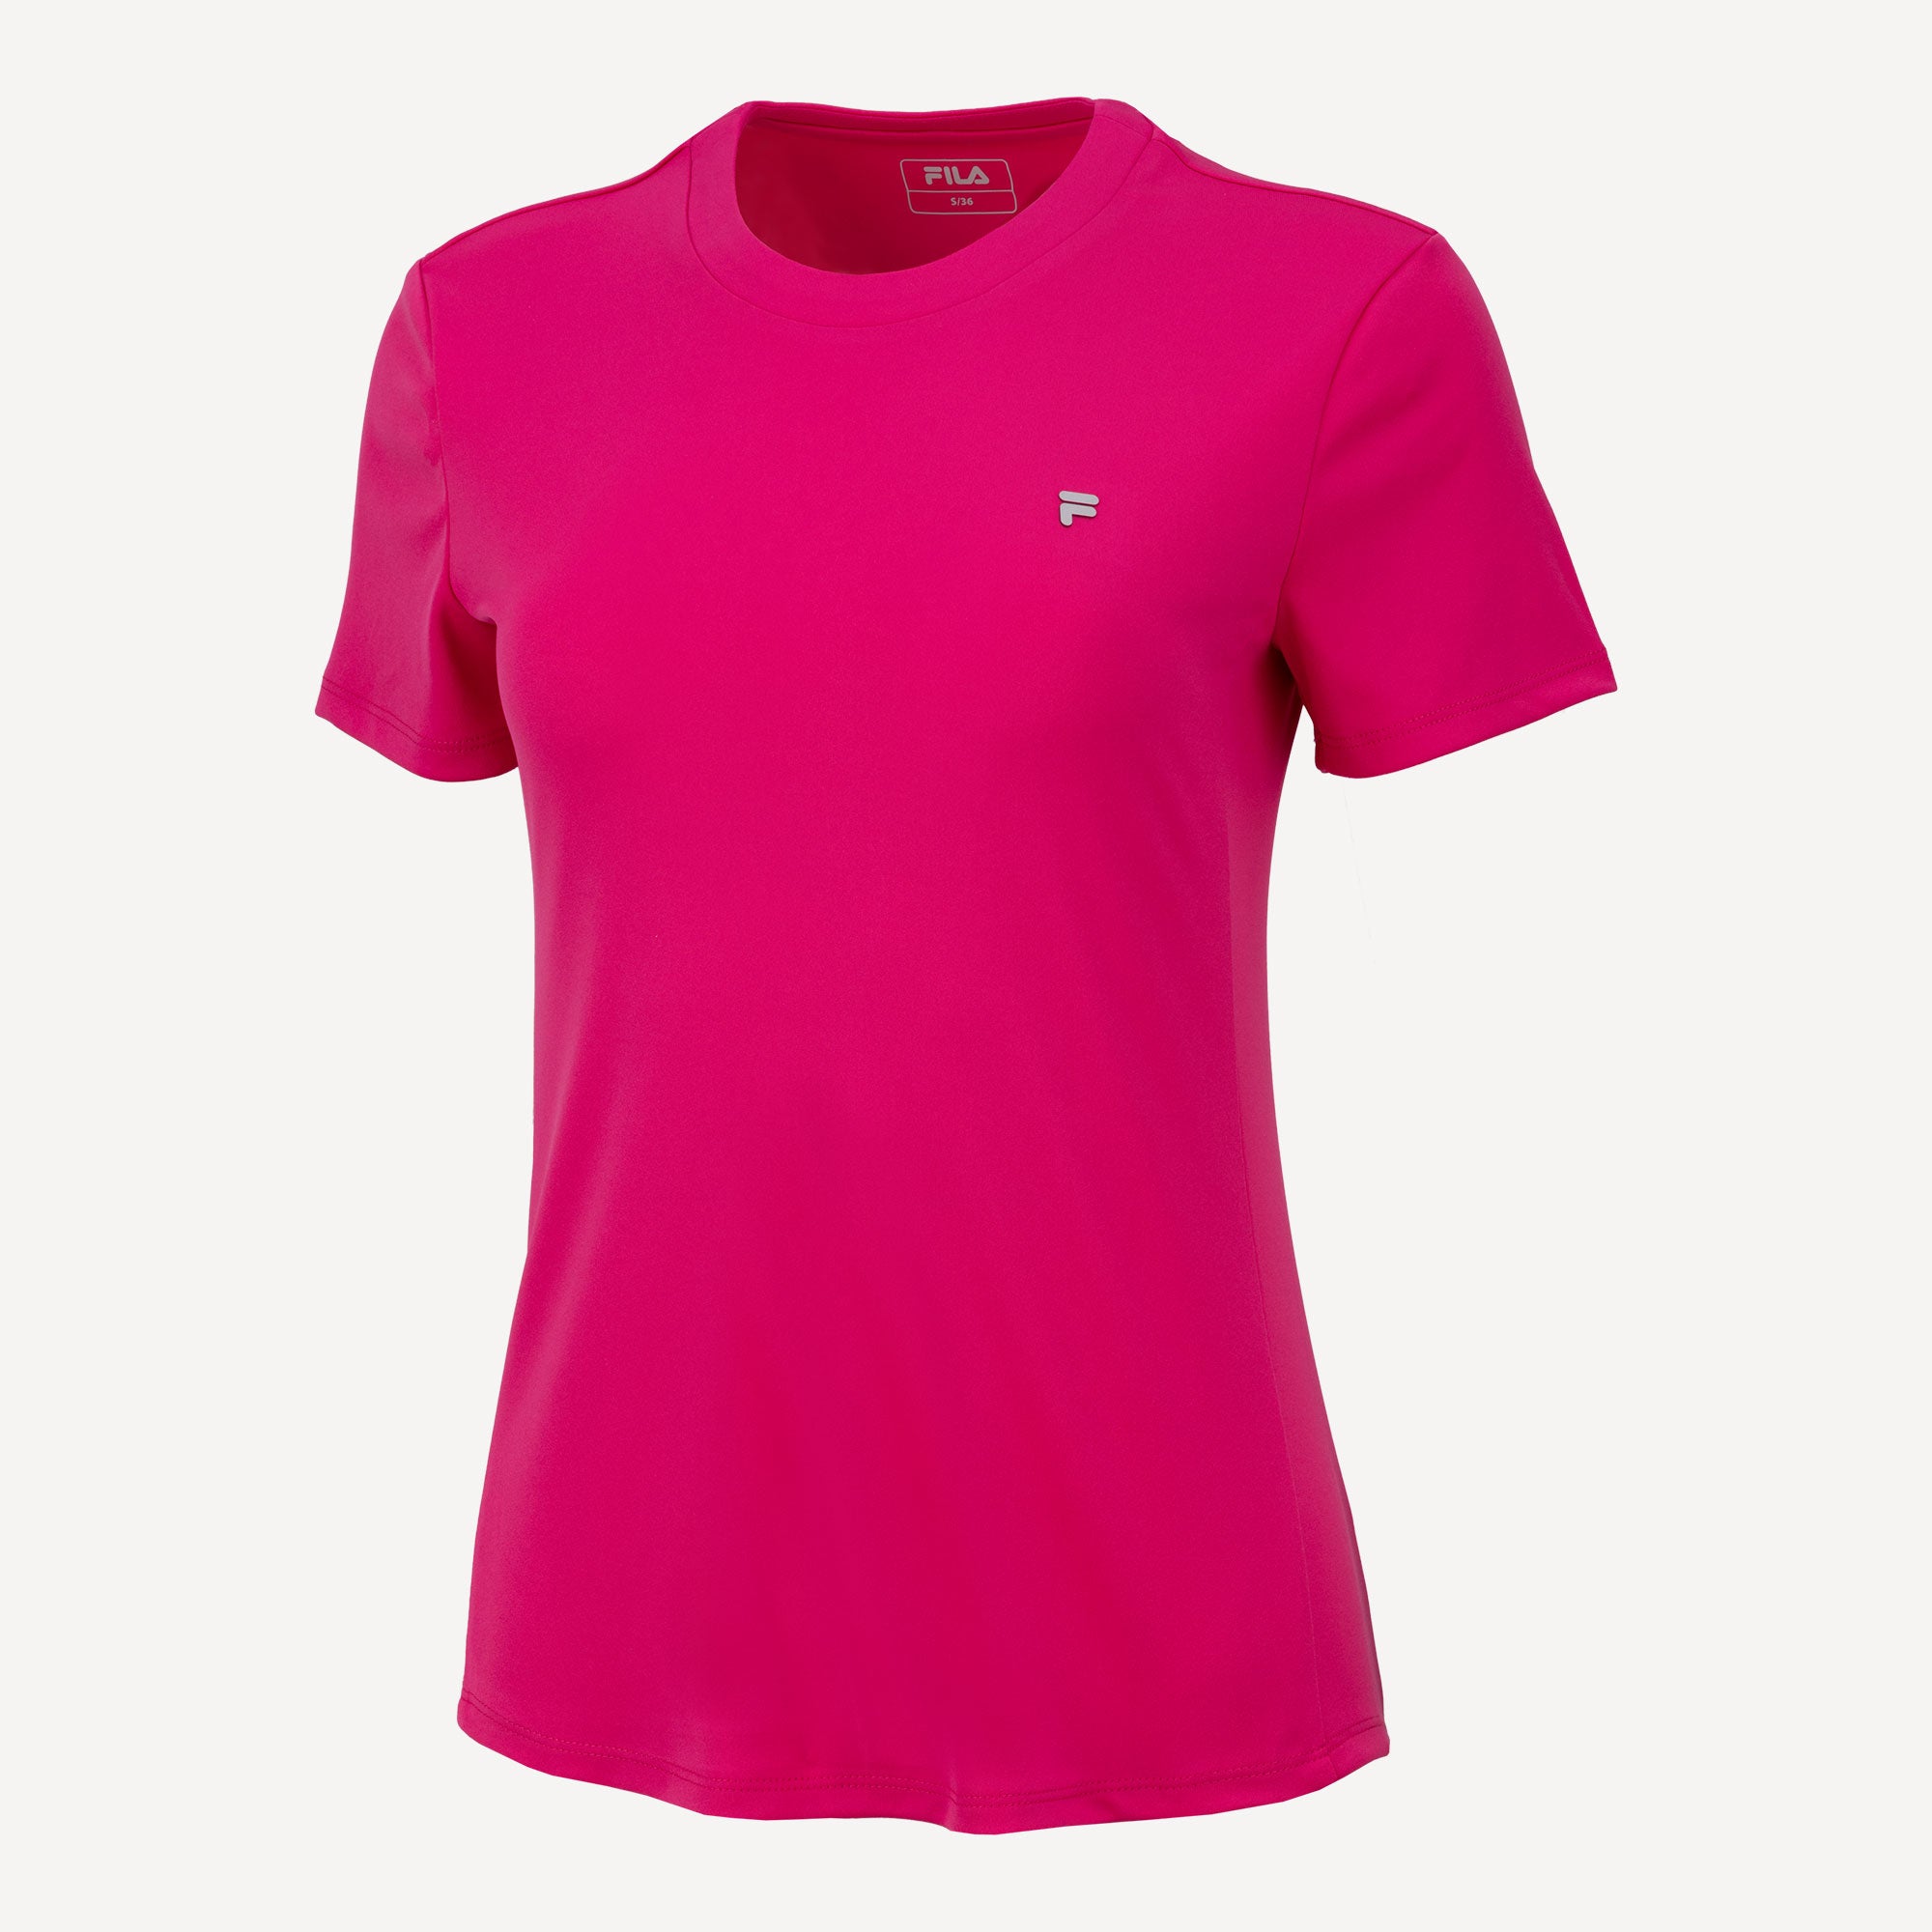 Fila Paula Women's Tennis Shirt Pink (1)